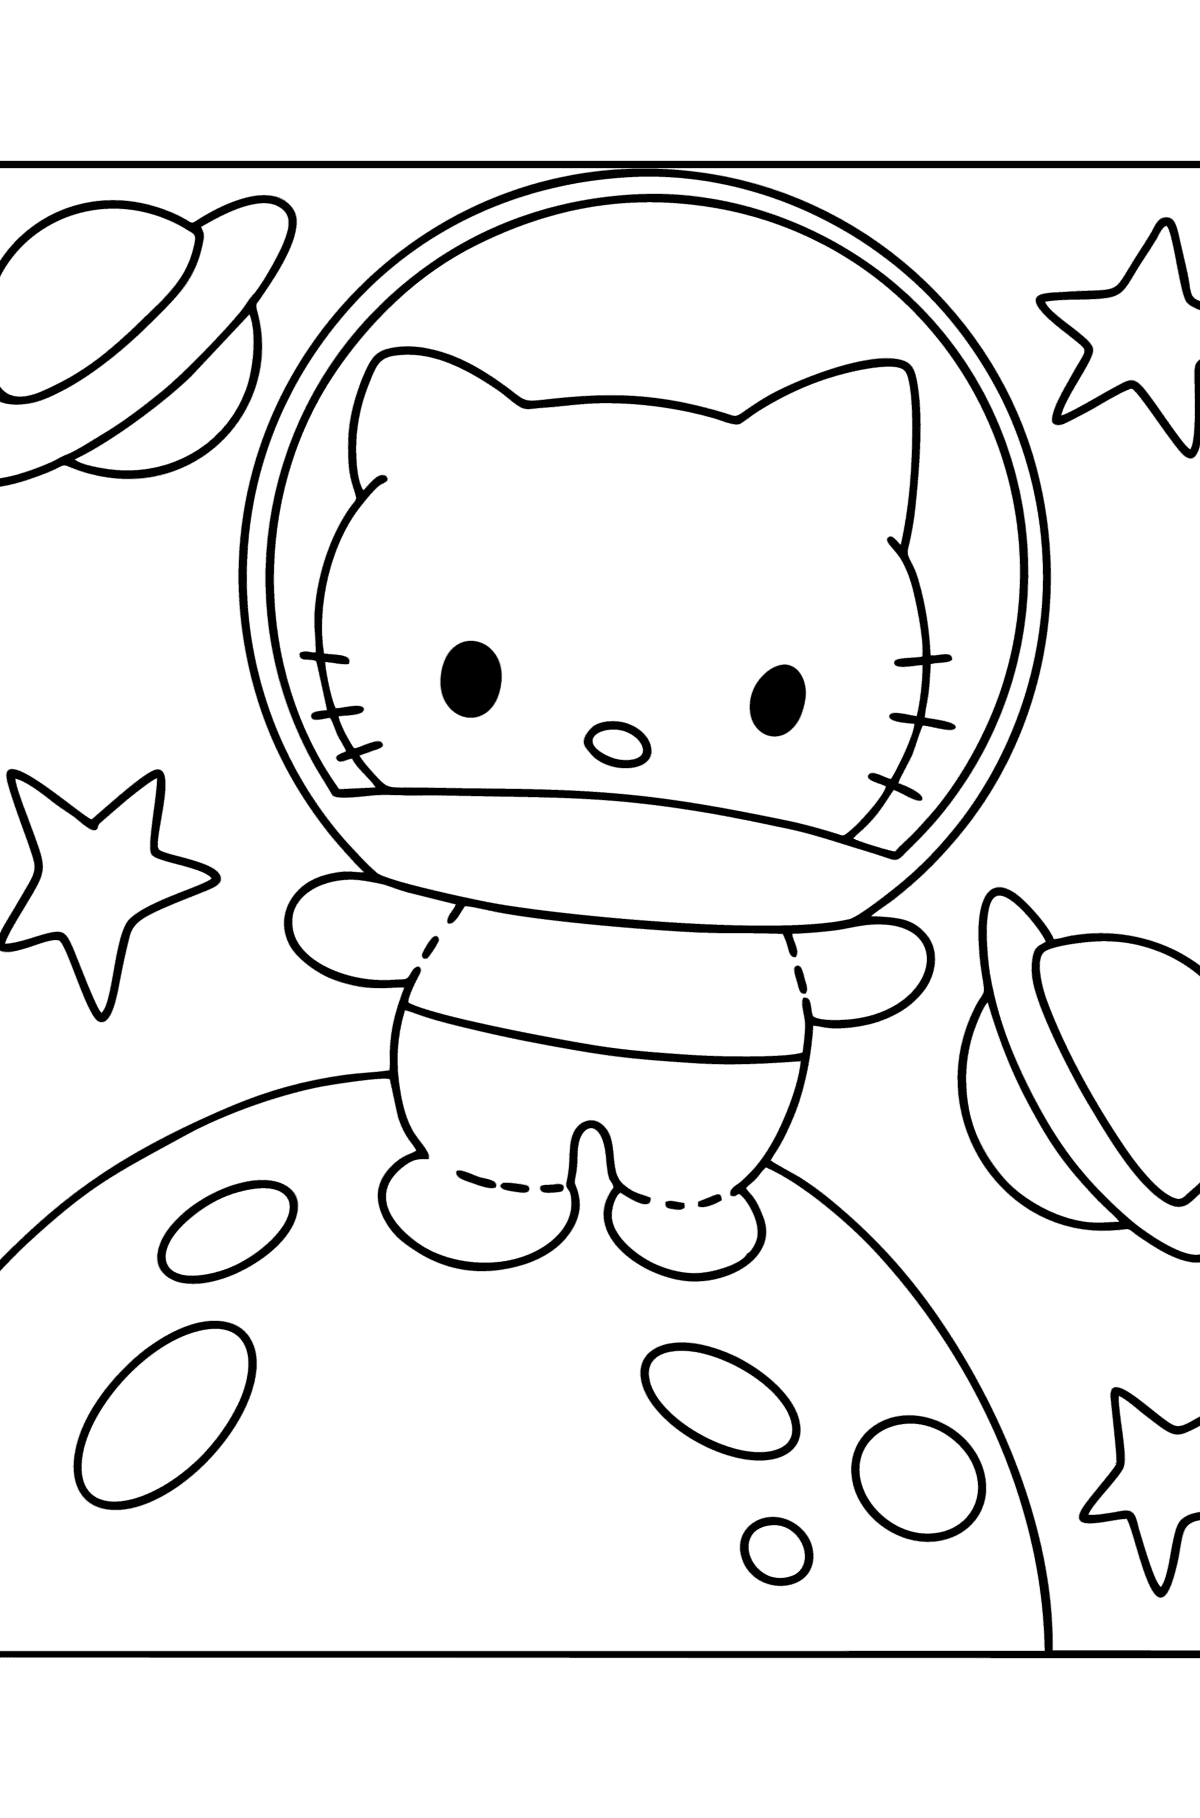 Tegning til farvning Hello Kitty astronaut - Tegninger til farvelægning for børn